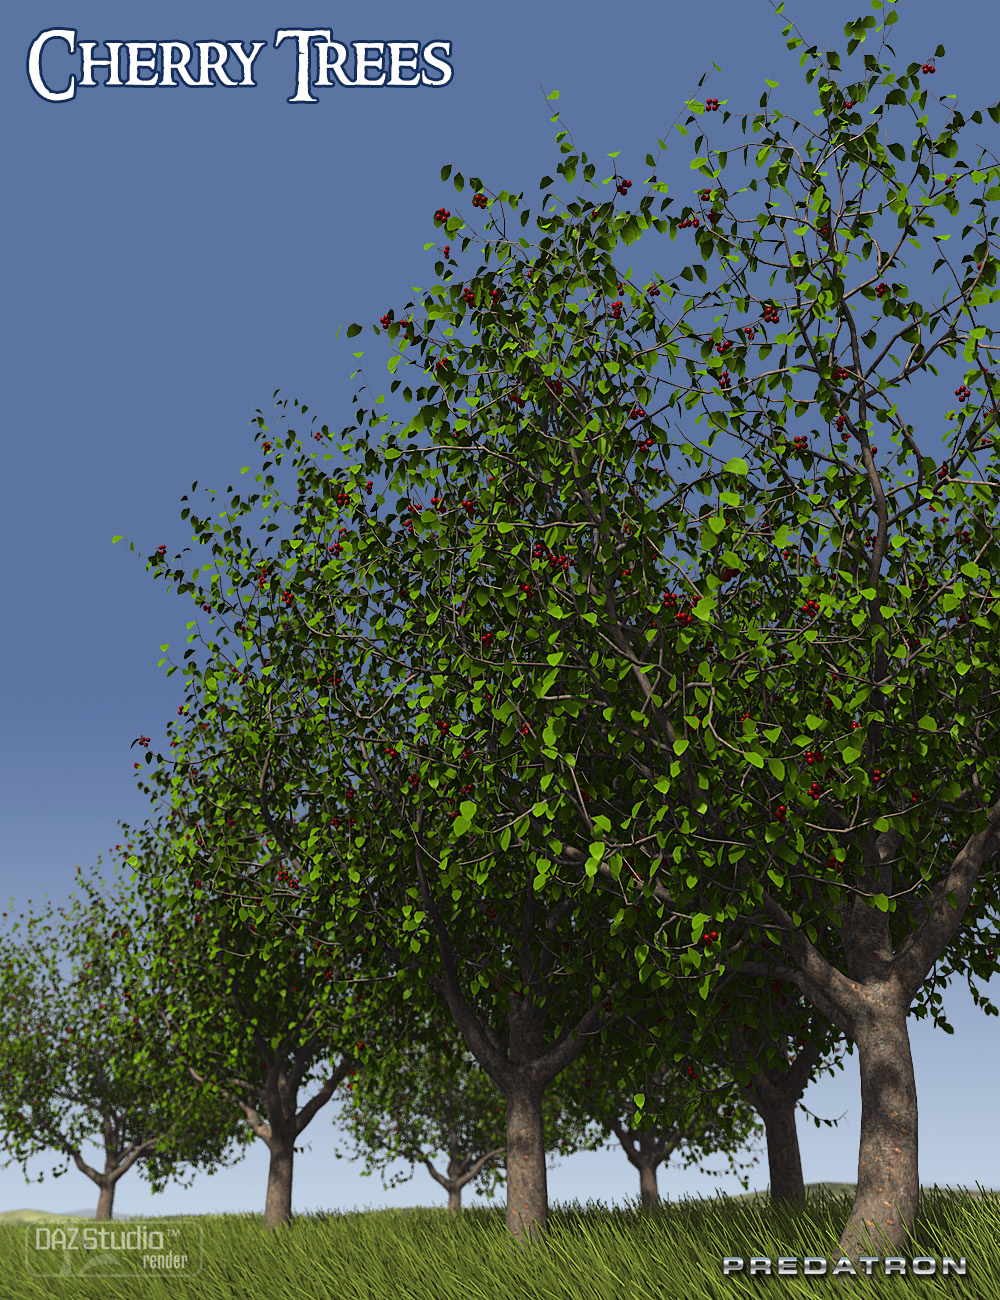 Predatron Cherry Trees